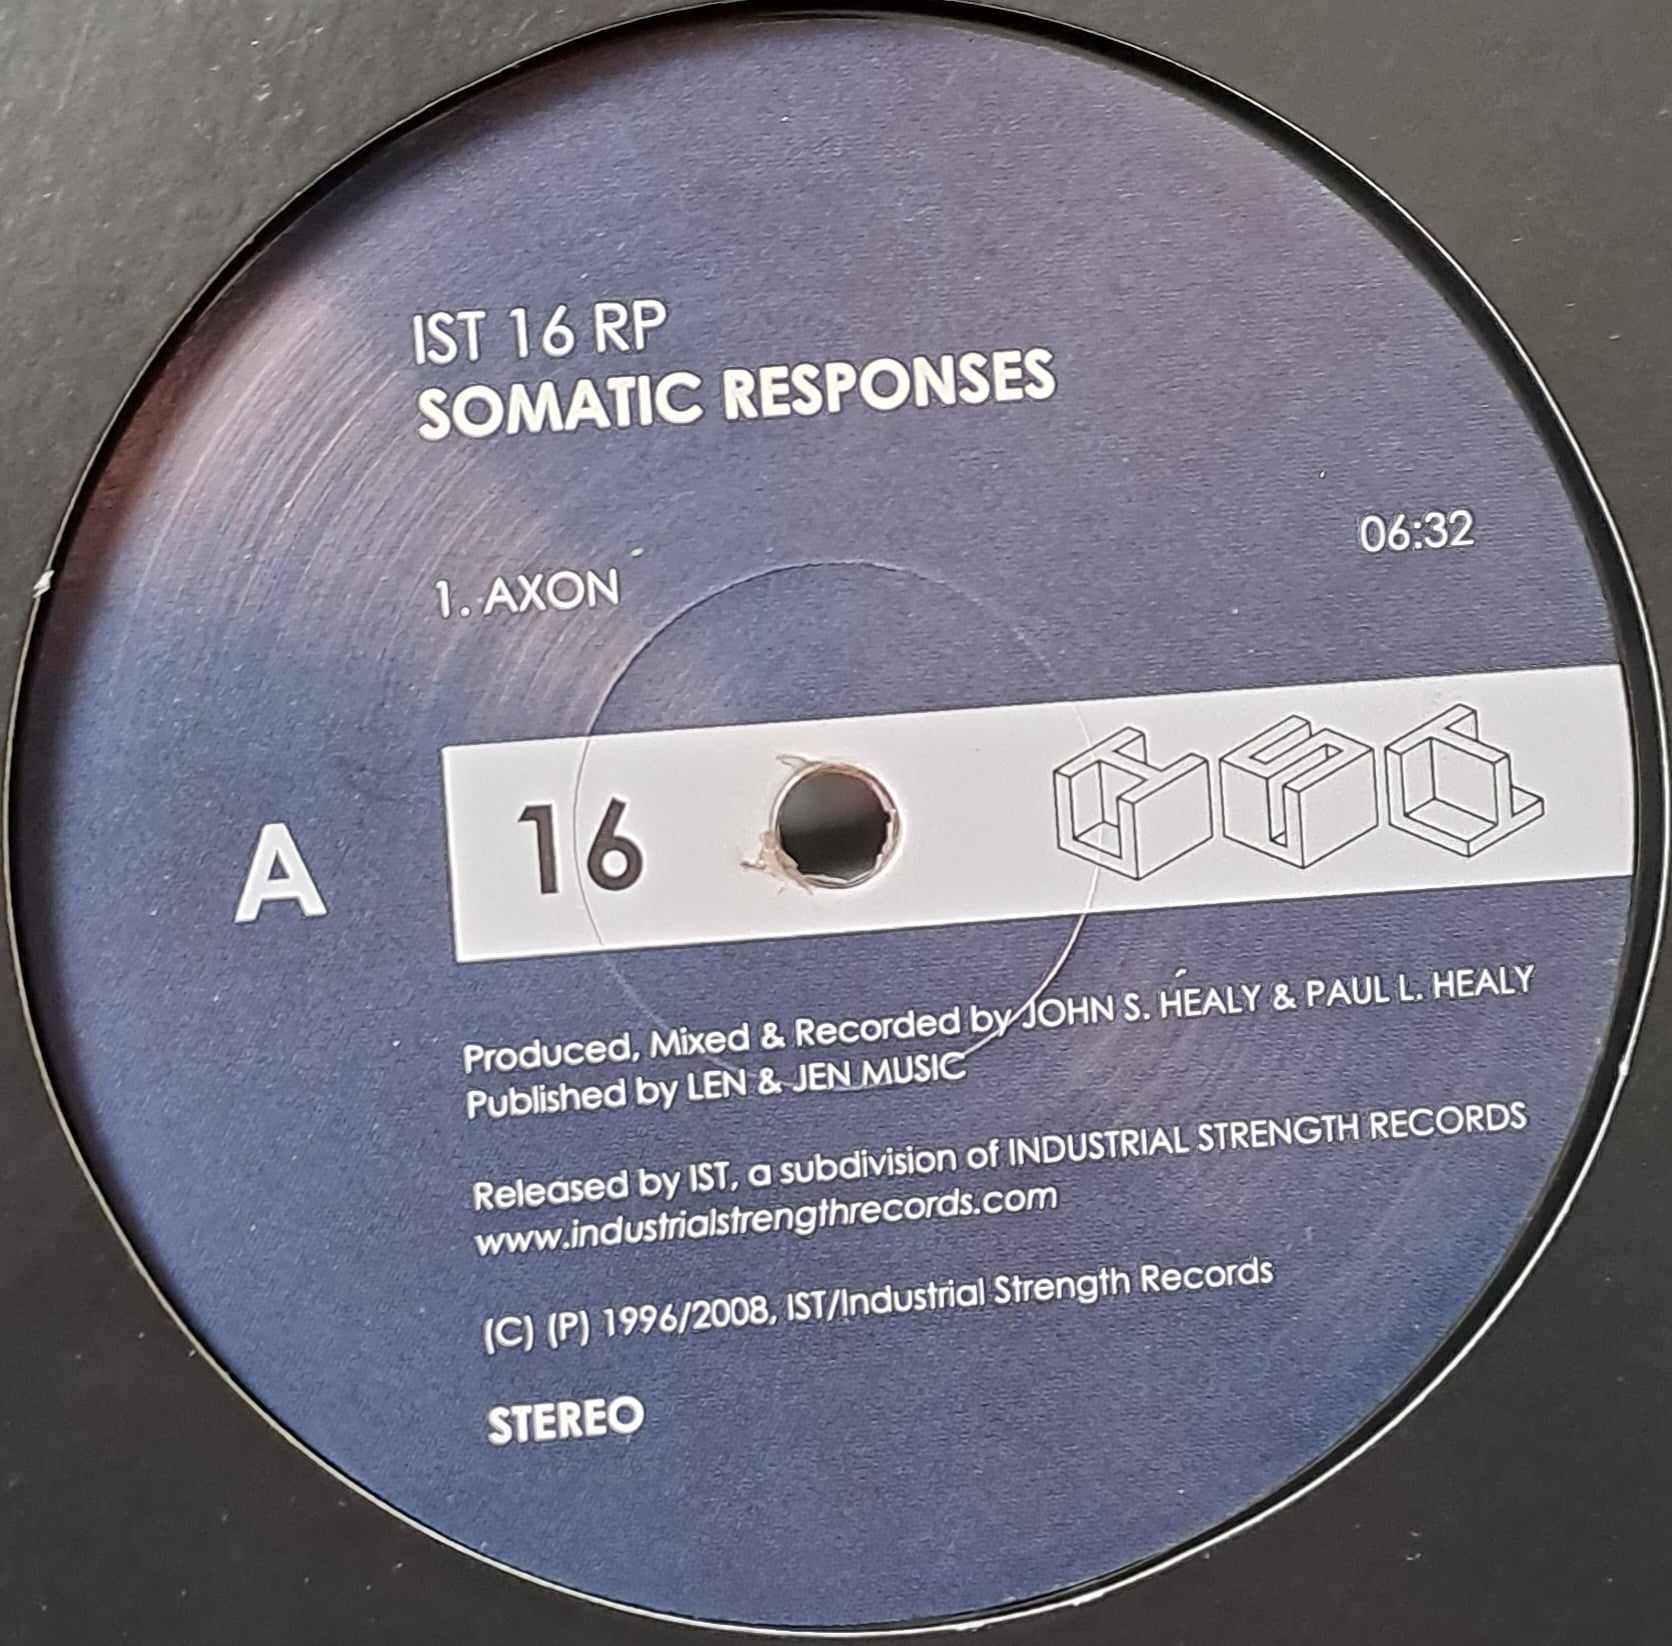 IST Records 16 RP - vinyle hardcore